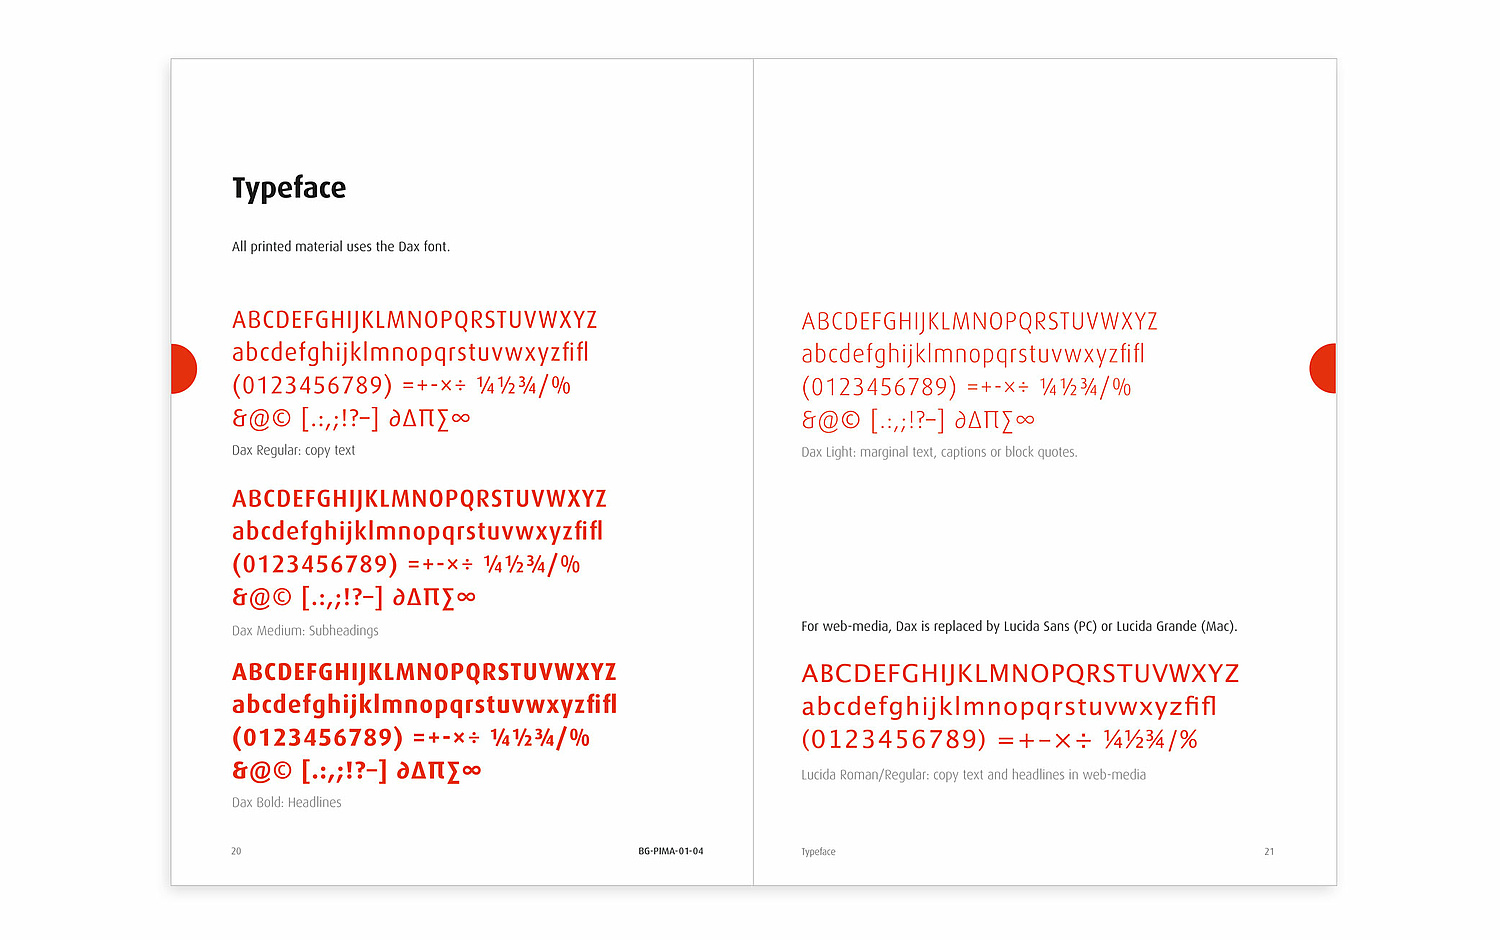 Das Bild zeigt Seiten zur Verwendung des Fonts "Dax" aus dem Design-Manual für das Coporate Design von Pima (für Alere, 2009). (© Papenfuss | Atelier)